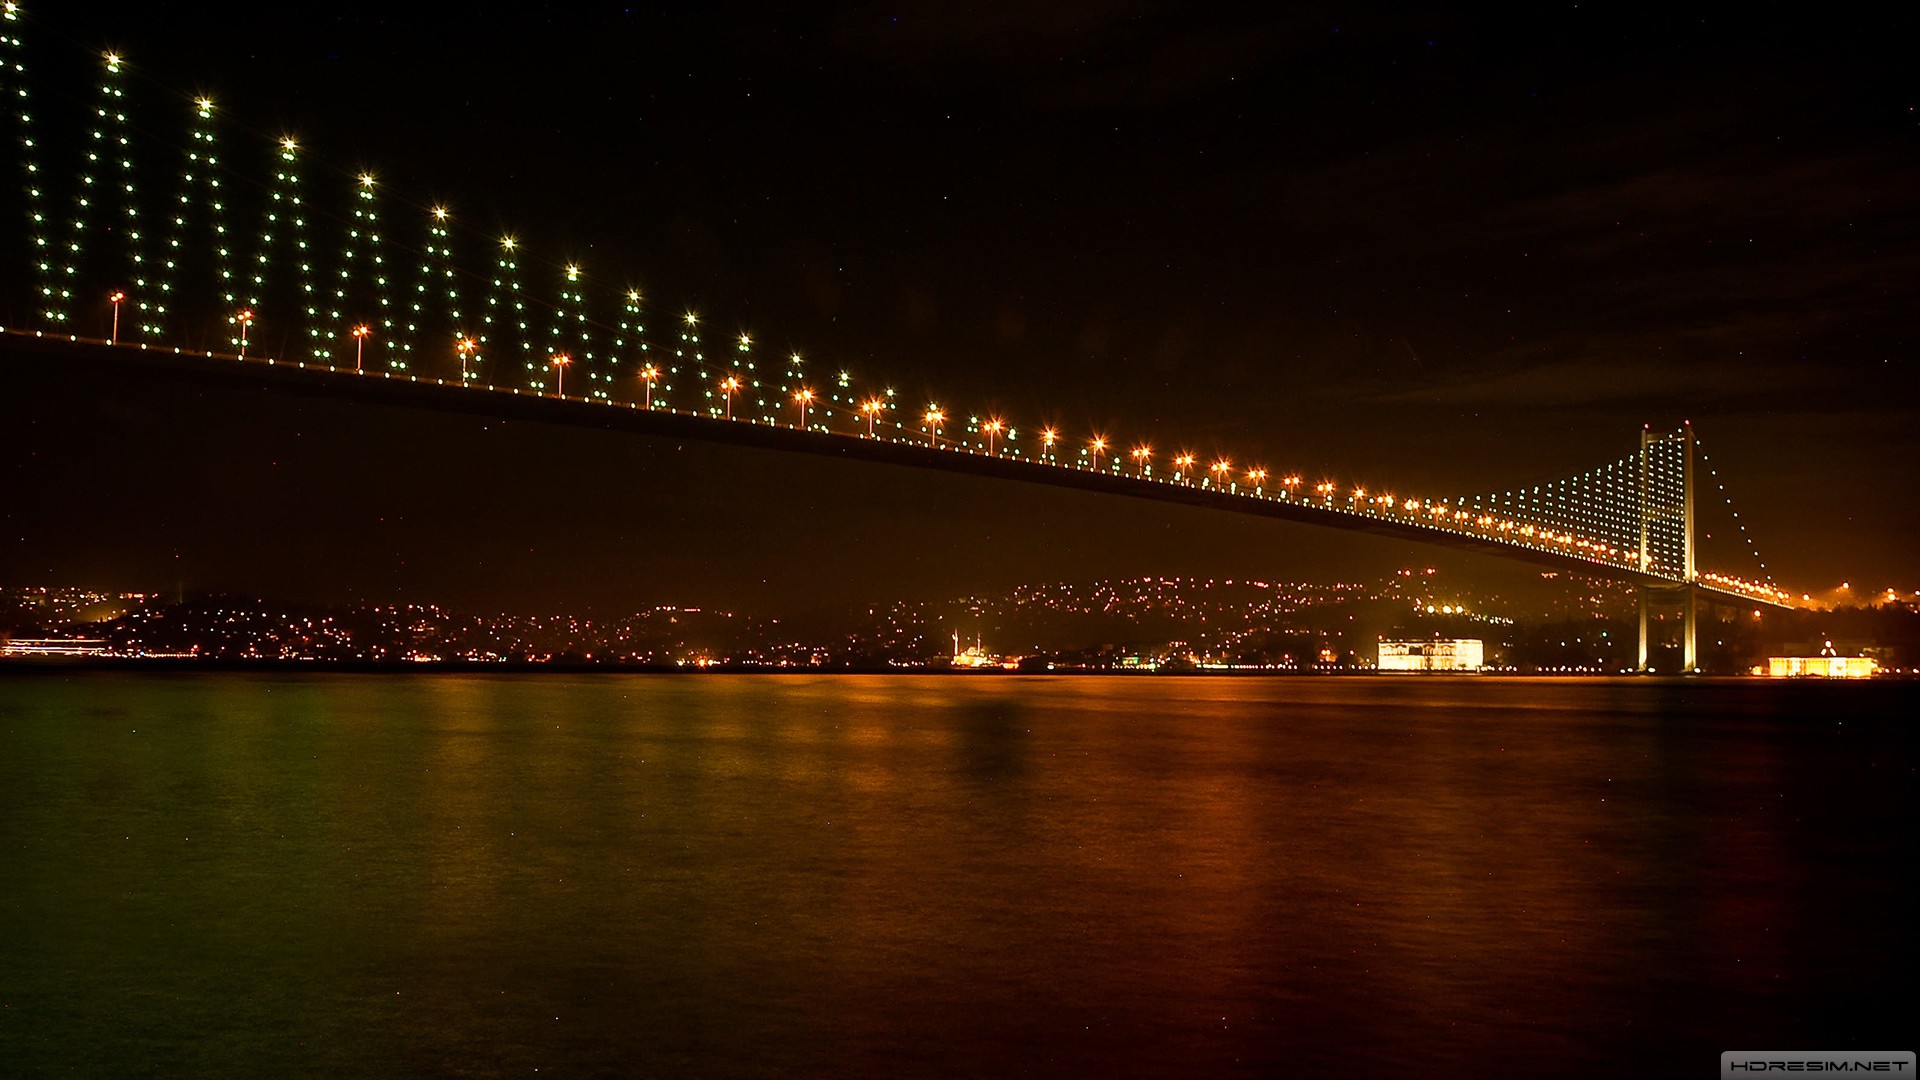 köprü,istanbul,boğaz,yıldız,deniz